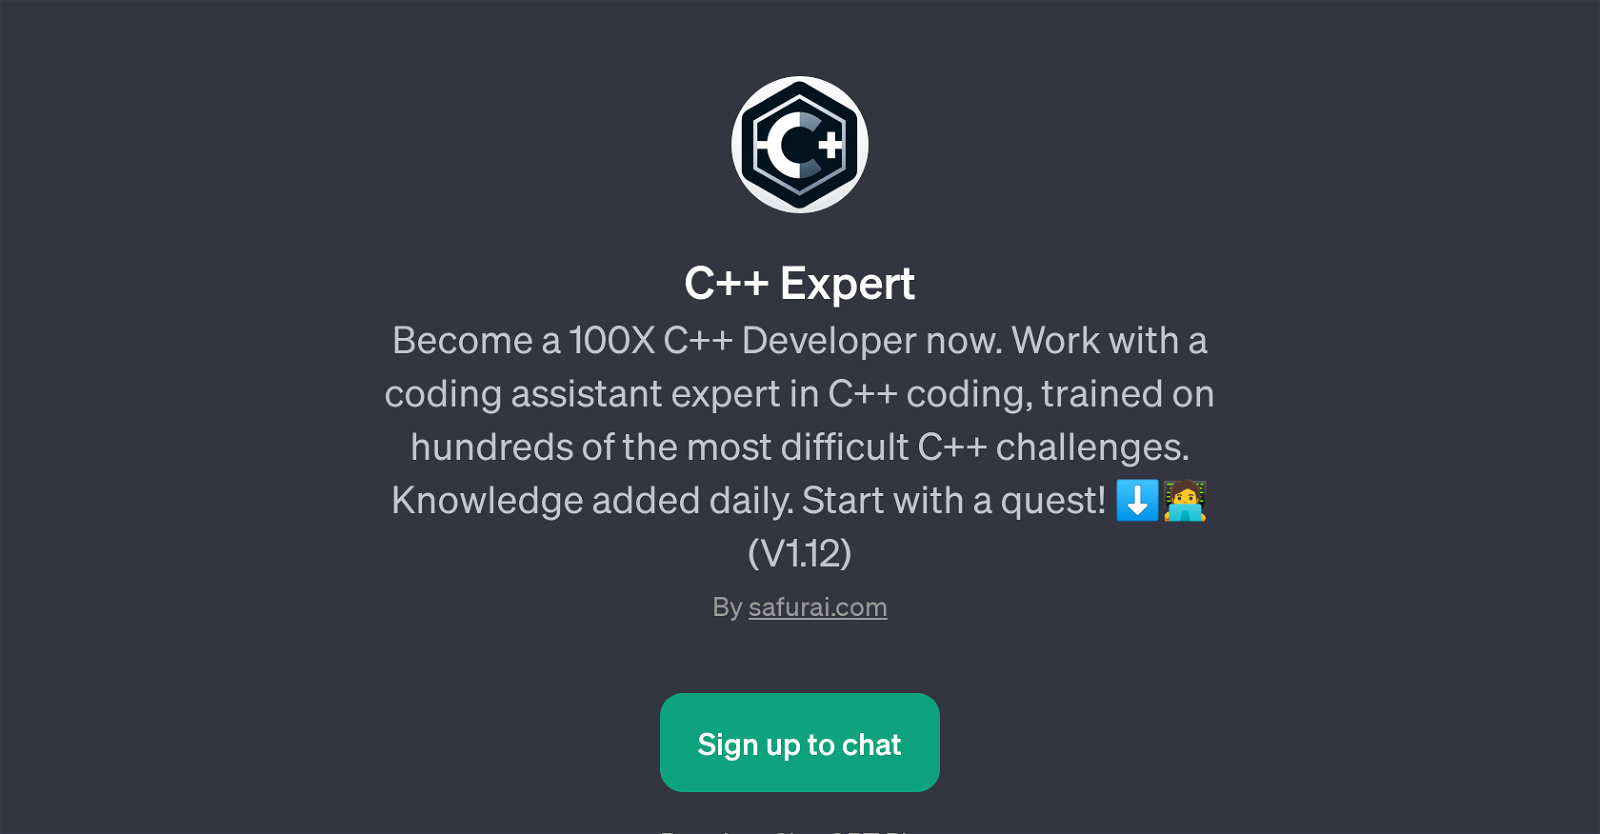 C++ Expert website